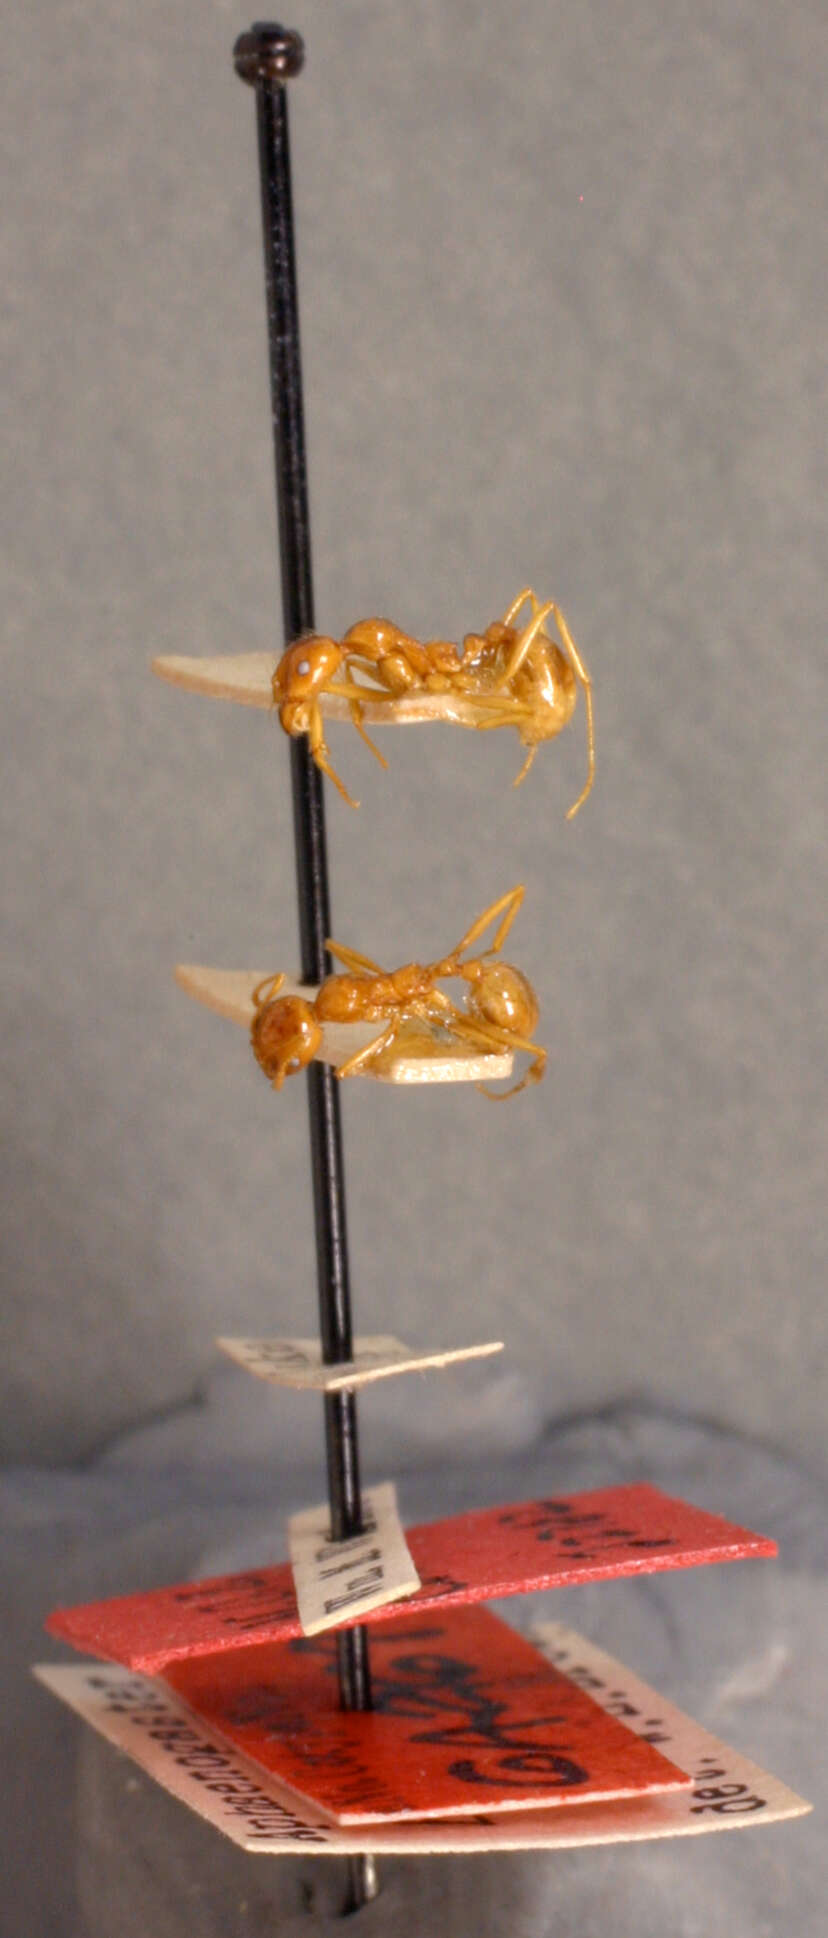 Image of Aphaenogaster barbigula Wheeler 1916